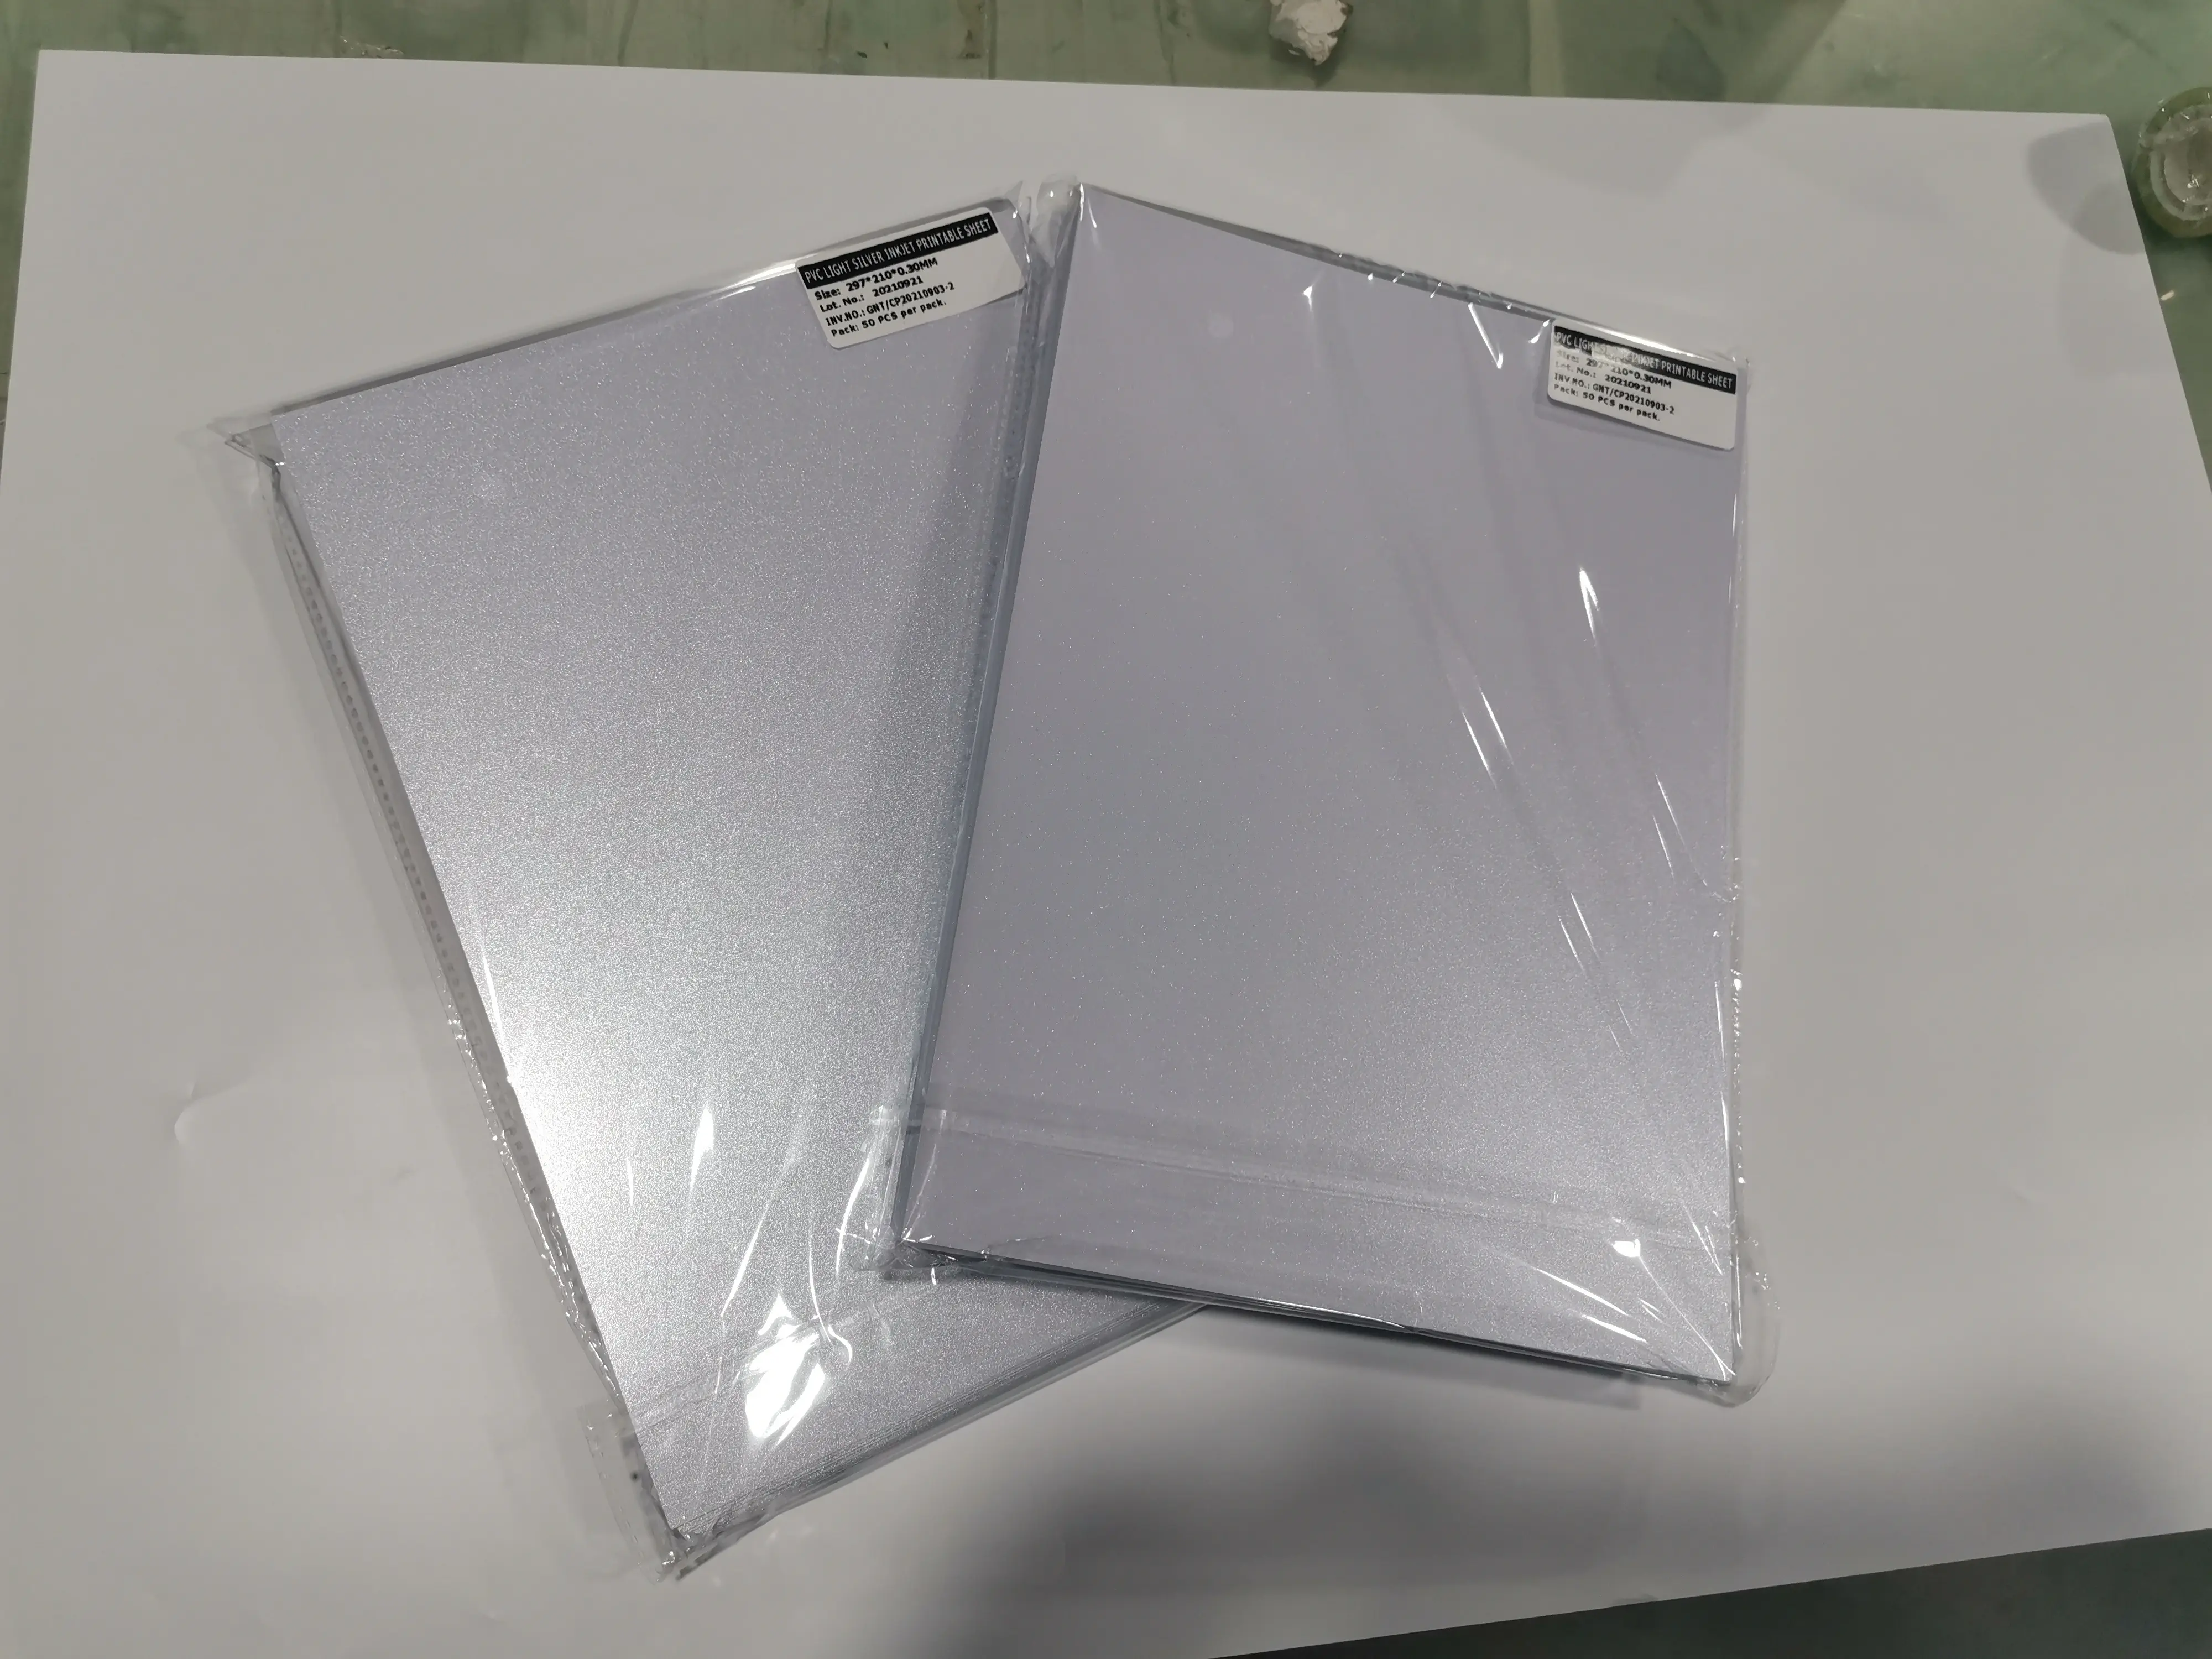 Chất lượng cao 0.18 mét chàm in kỹ thuật số tấm PVC cho sản xuất thẻ thông minh